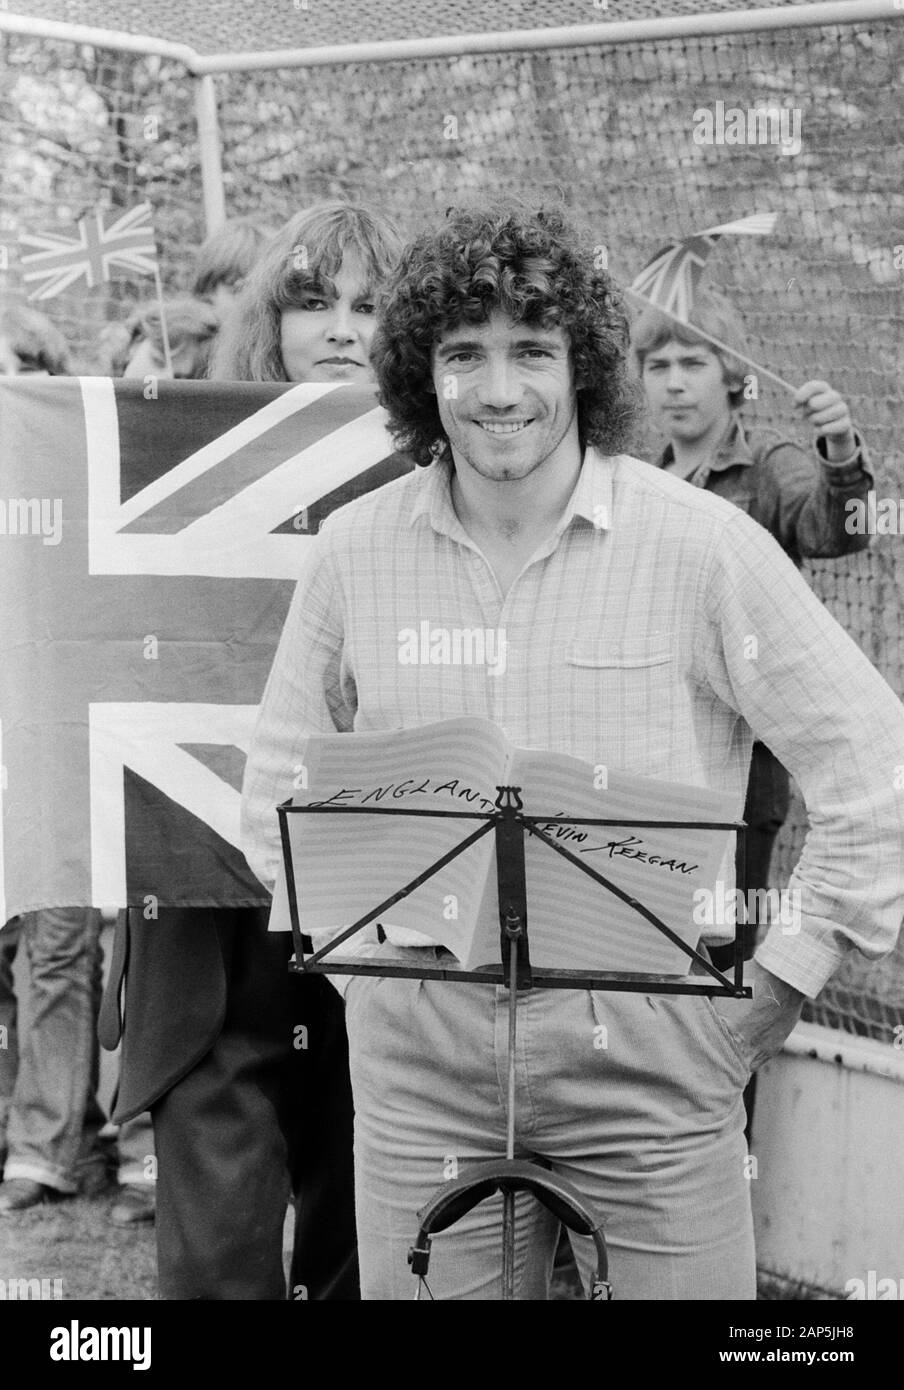 Kevin Keegan, britischer Fußballspieler, singt seine unico " Inghilterra " ein, Deutschland 1980. British giocatore di football Kevin Keegan, cantando le sue 45 singolo "Inghilterra", Germania 1980. Foto Stock